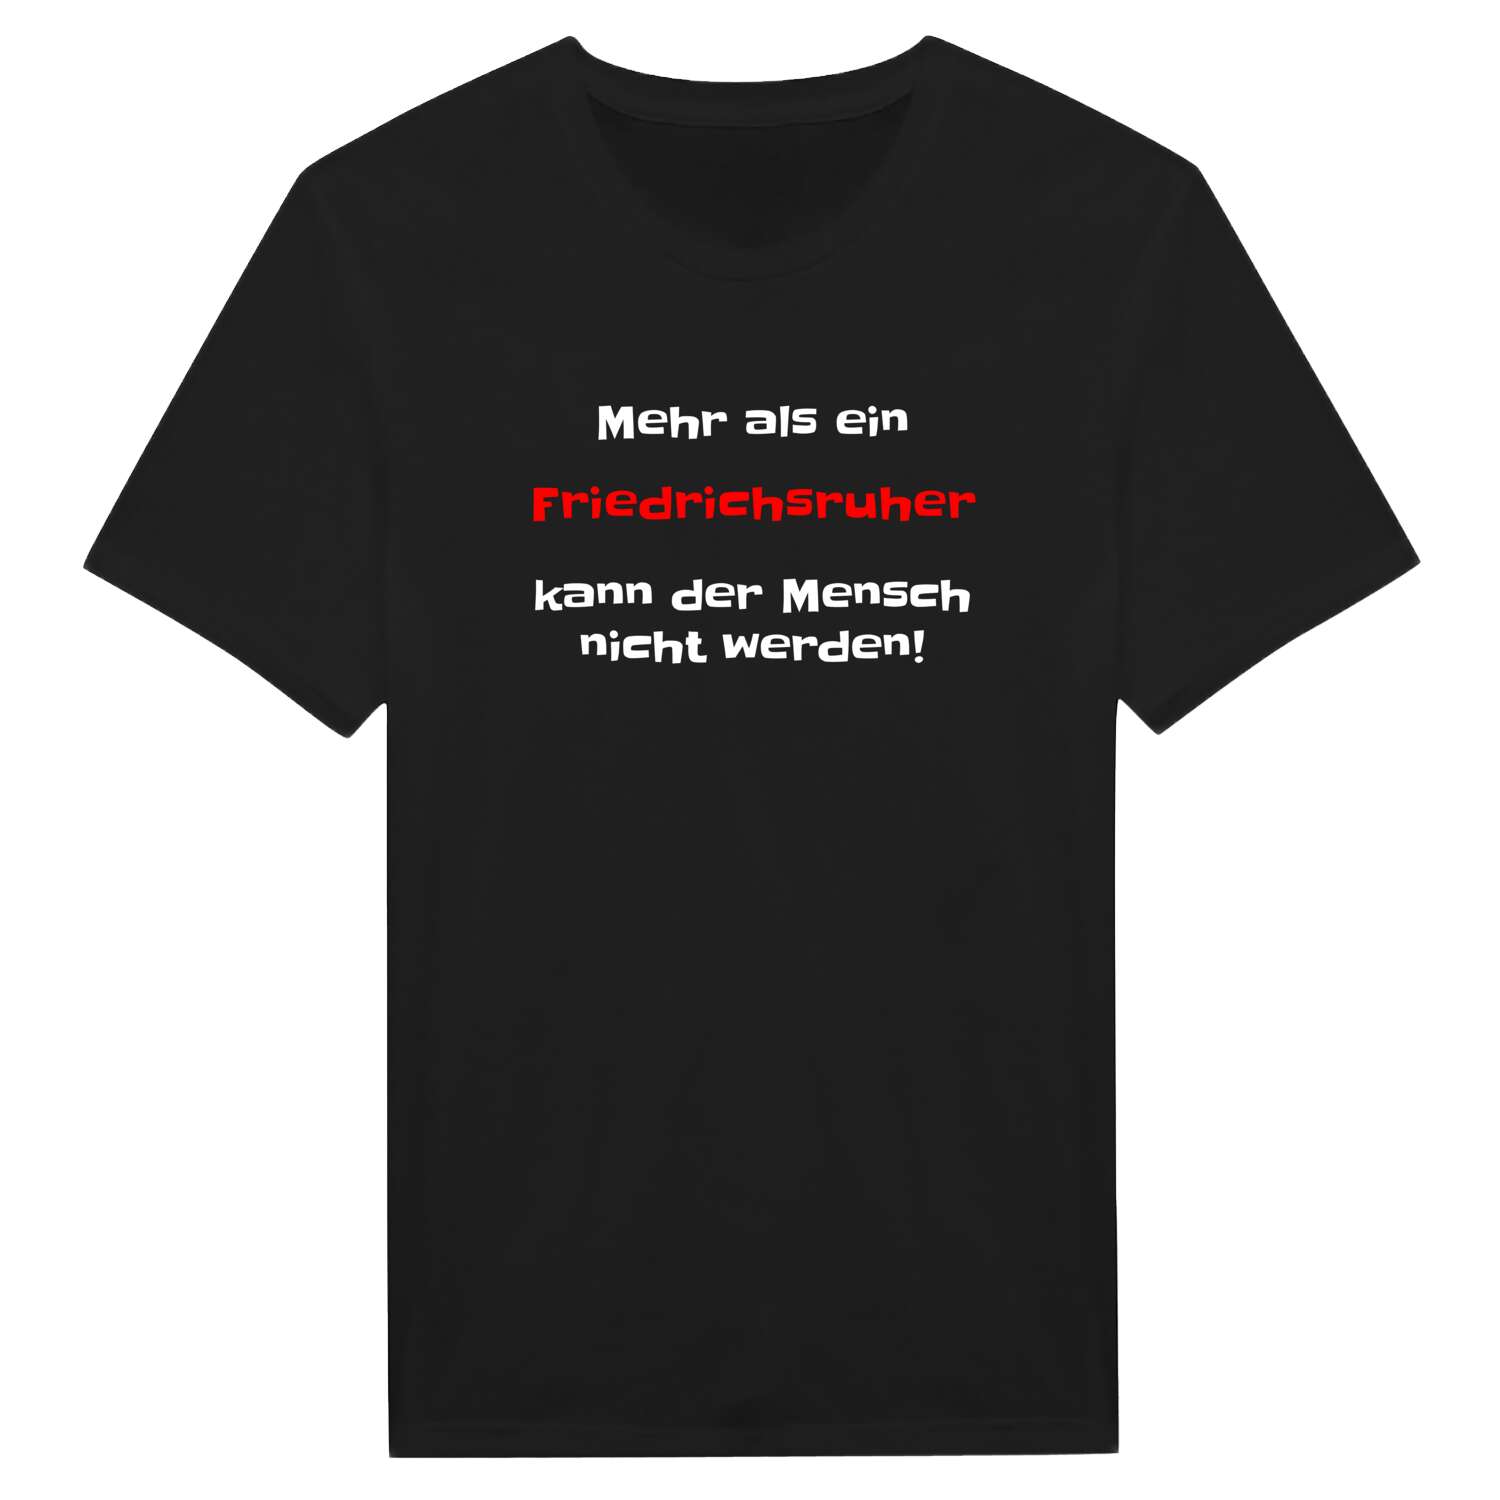 Friedrichsruh T-Shirt »Mehr als ein«